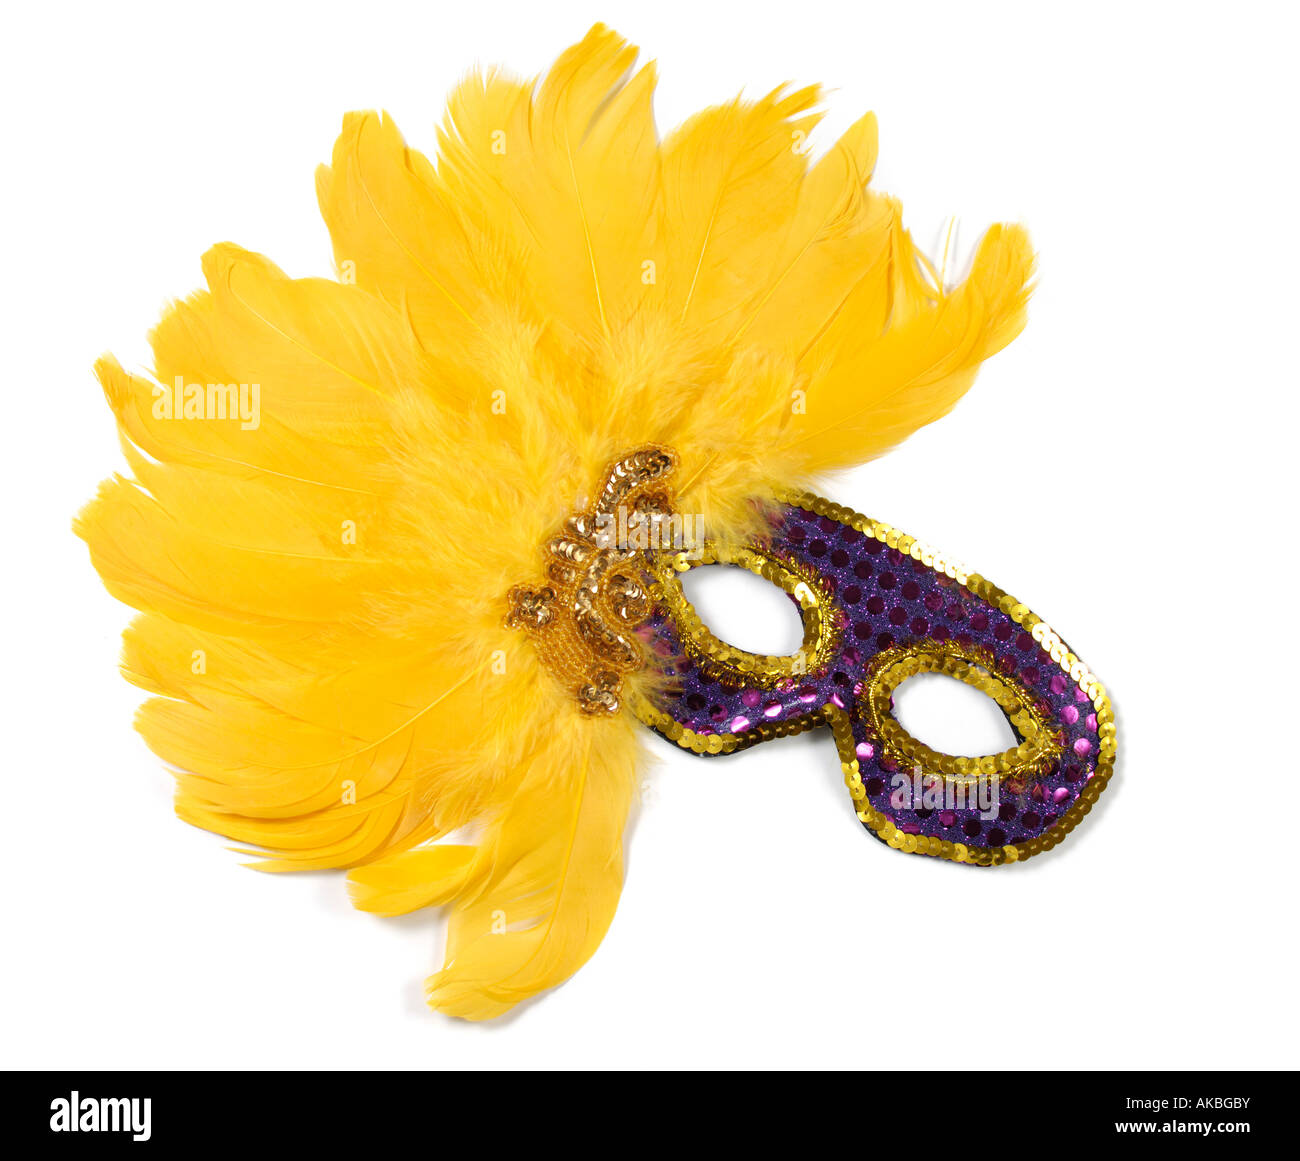 Masque de carnaval violet décoré de plumes d'oiseau jaune Banque D'Images